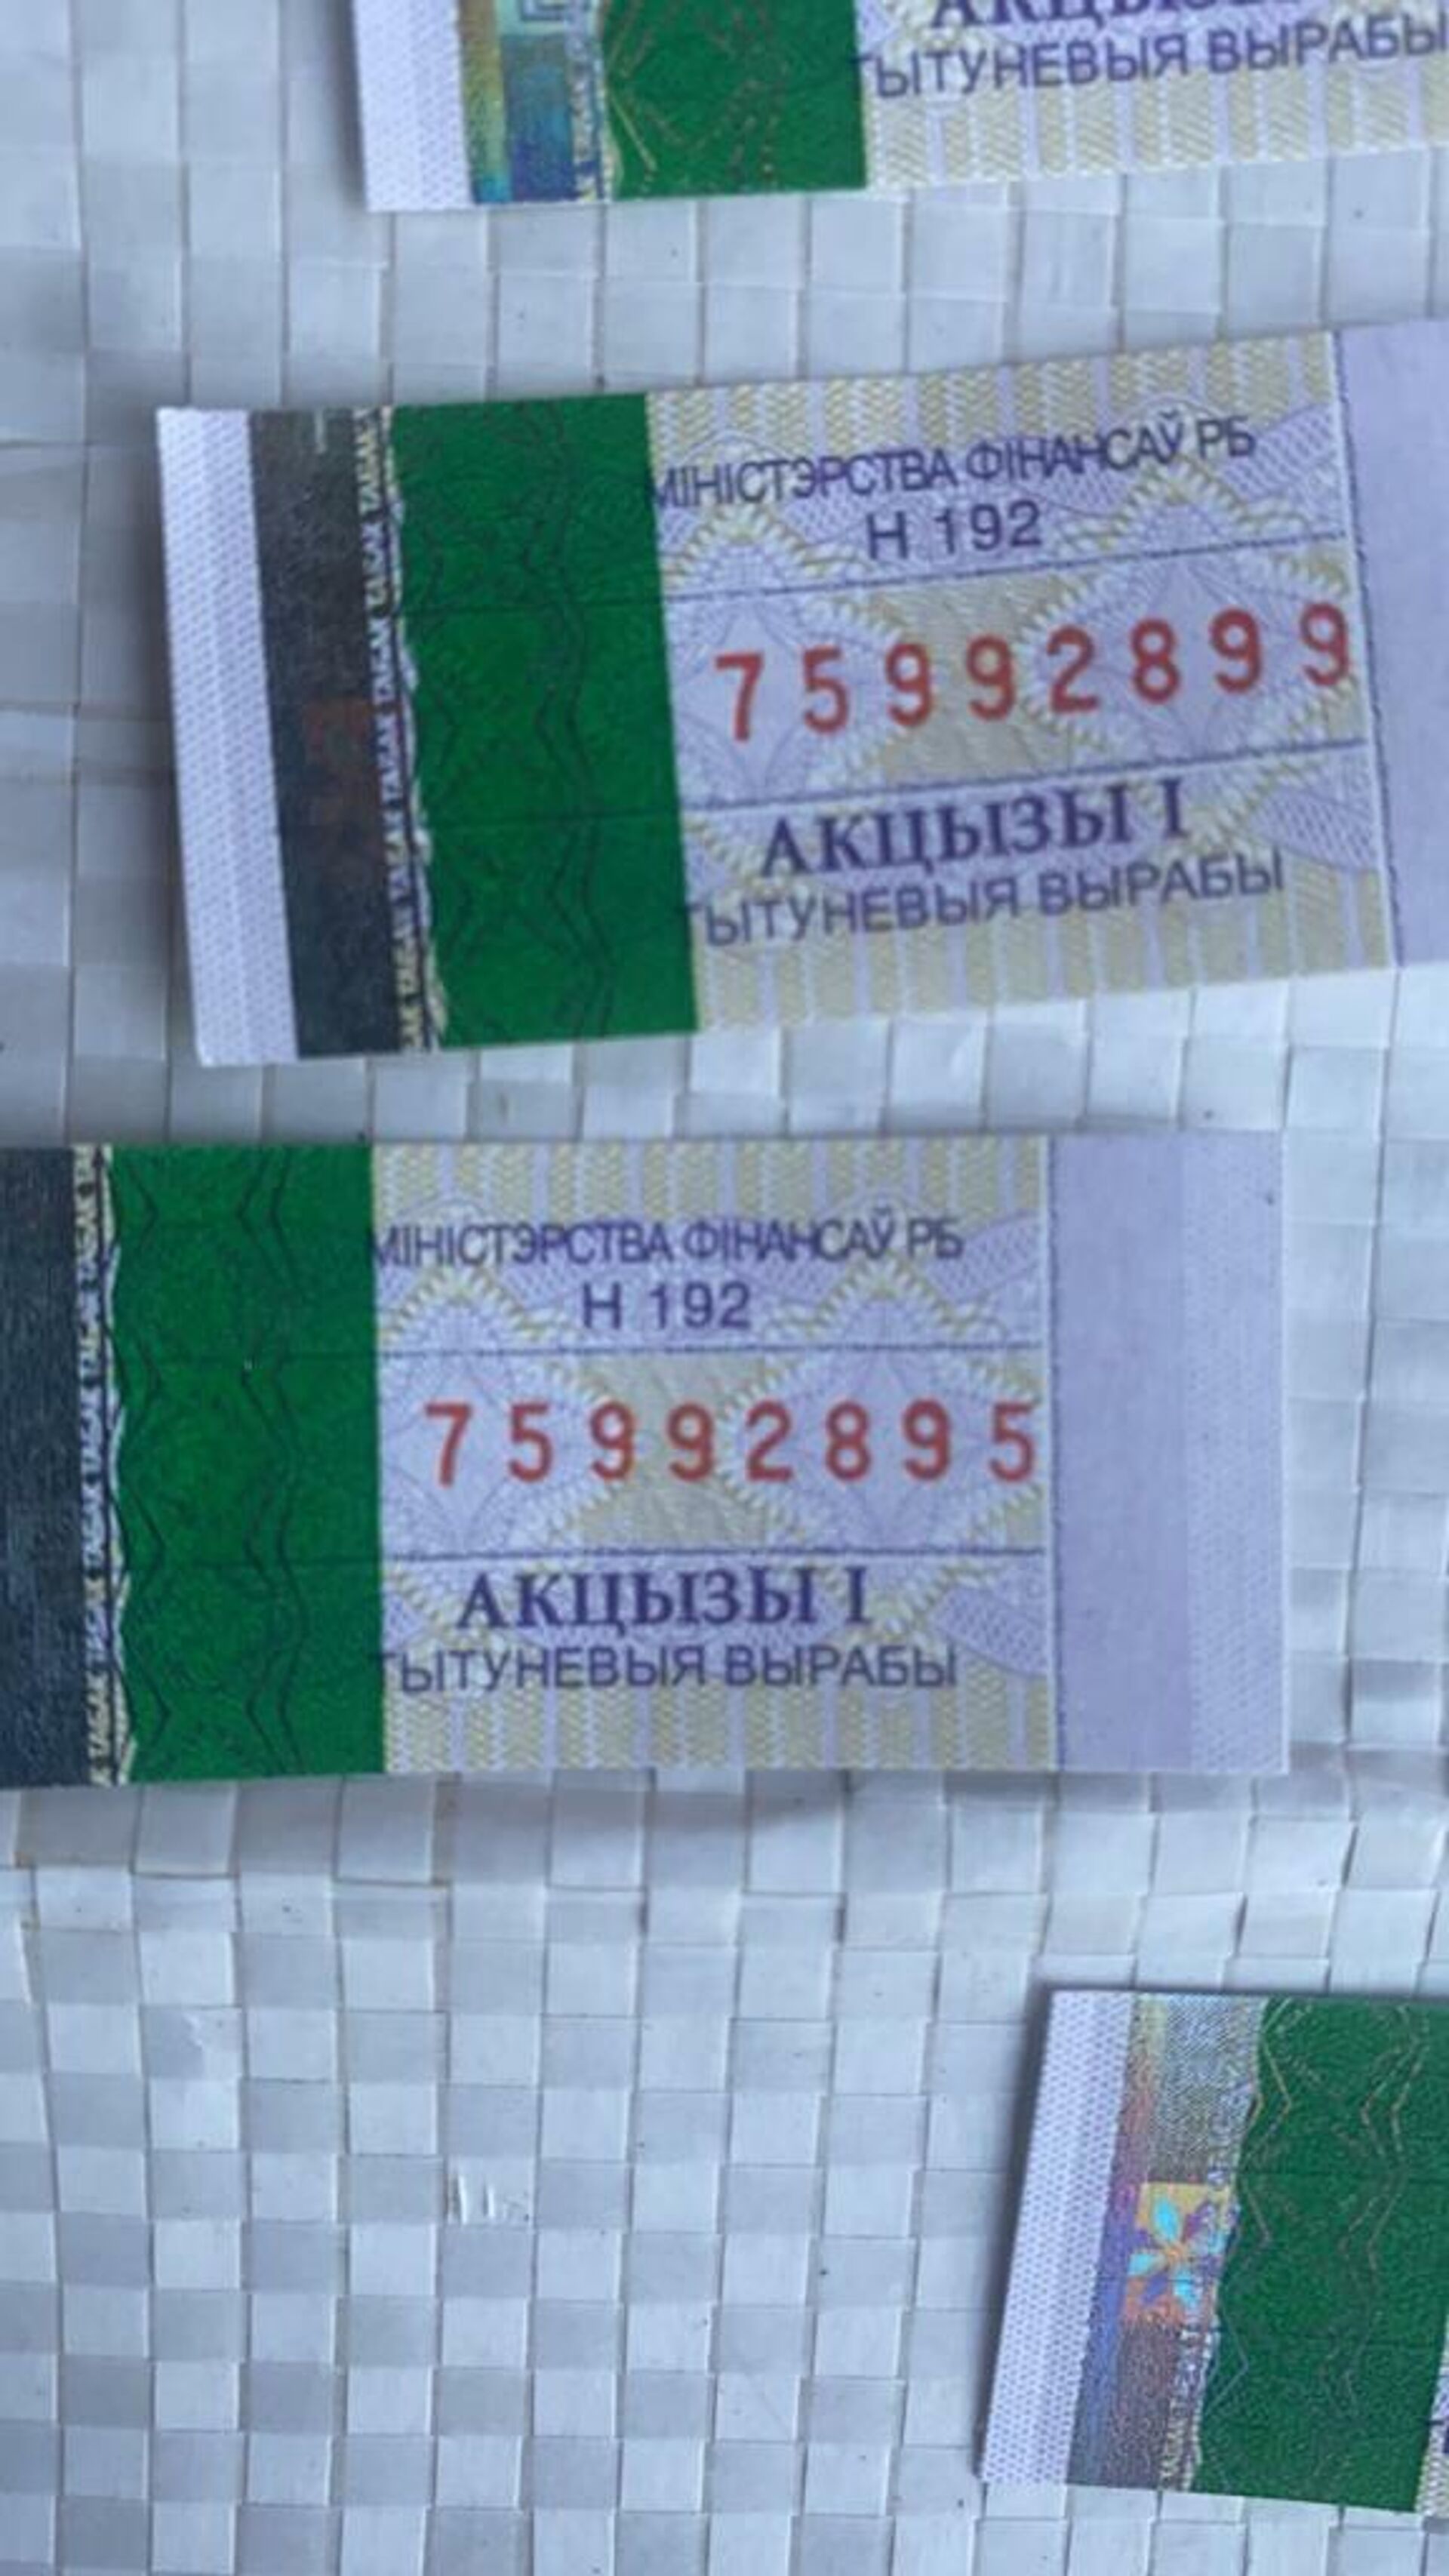 Контрафактный груз акцизных марок, задержанный на границе с Кыргызстаном - Sputnik Казахстан, 1920, 03.05.2022